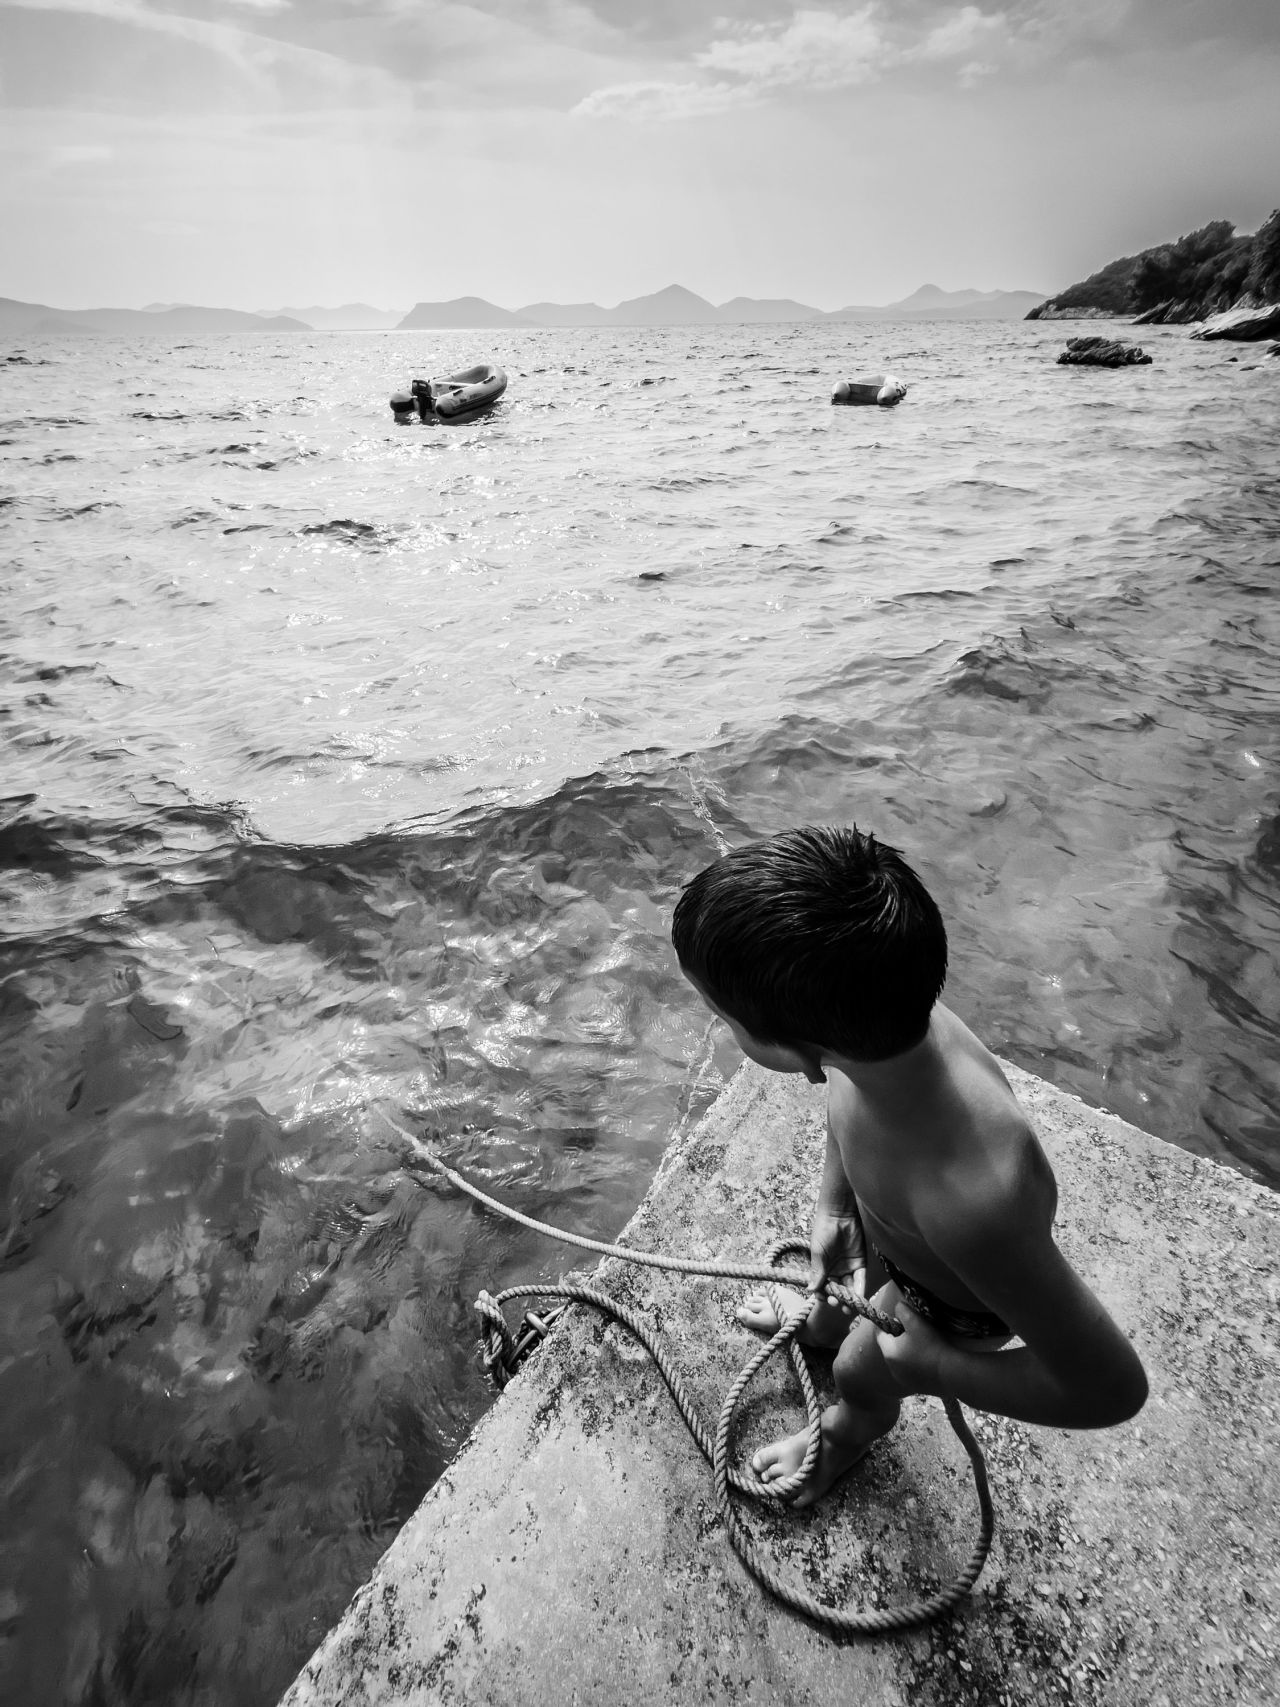 Sasa Borozan, Bosnia and Herzegovina, 2nd Place, Photographer of the Year, "Taming Waves", Shot on iPhone 13 Pro, Sladjenovici, Croatia